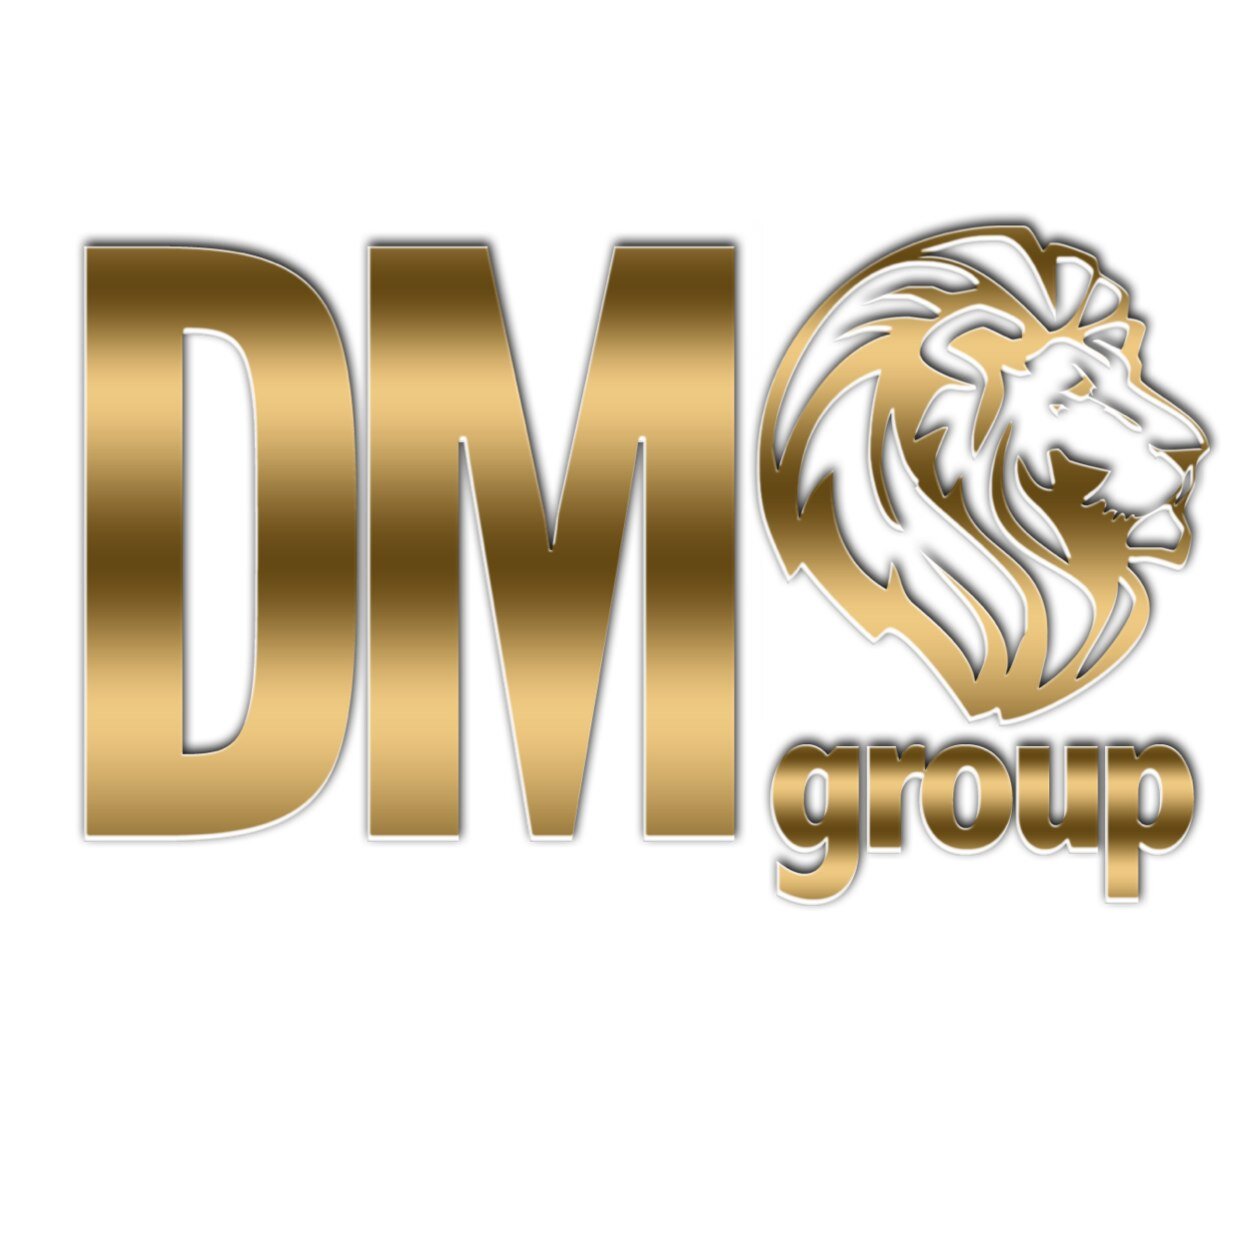 DM_Group